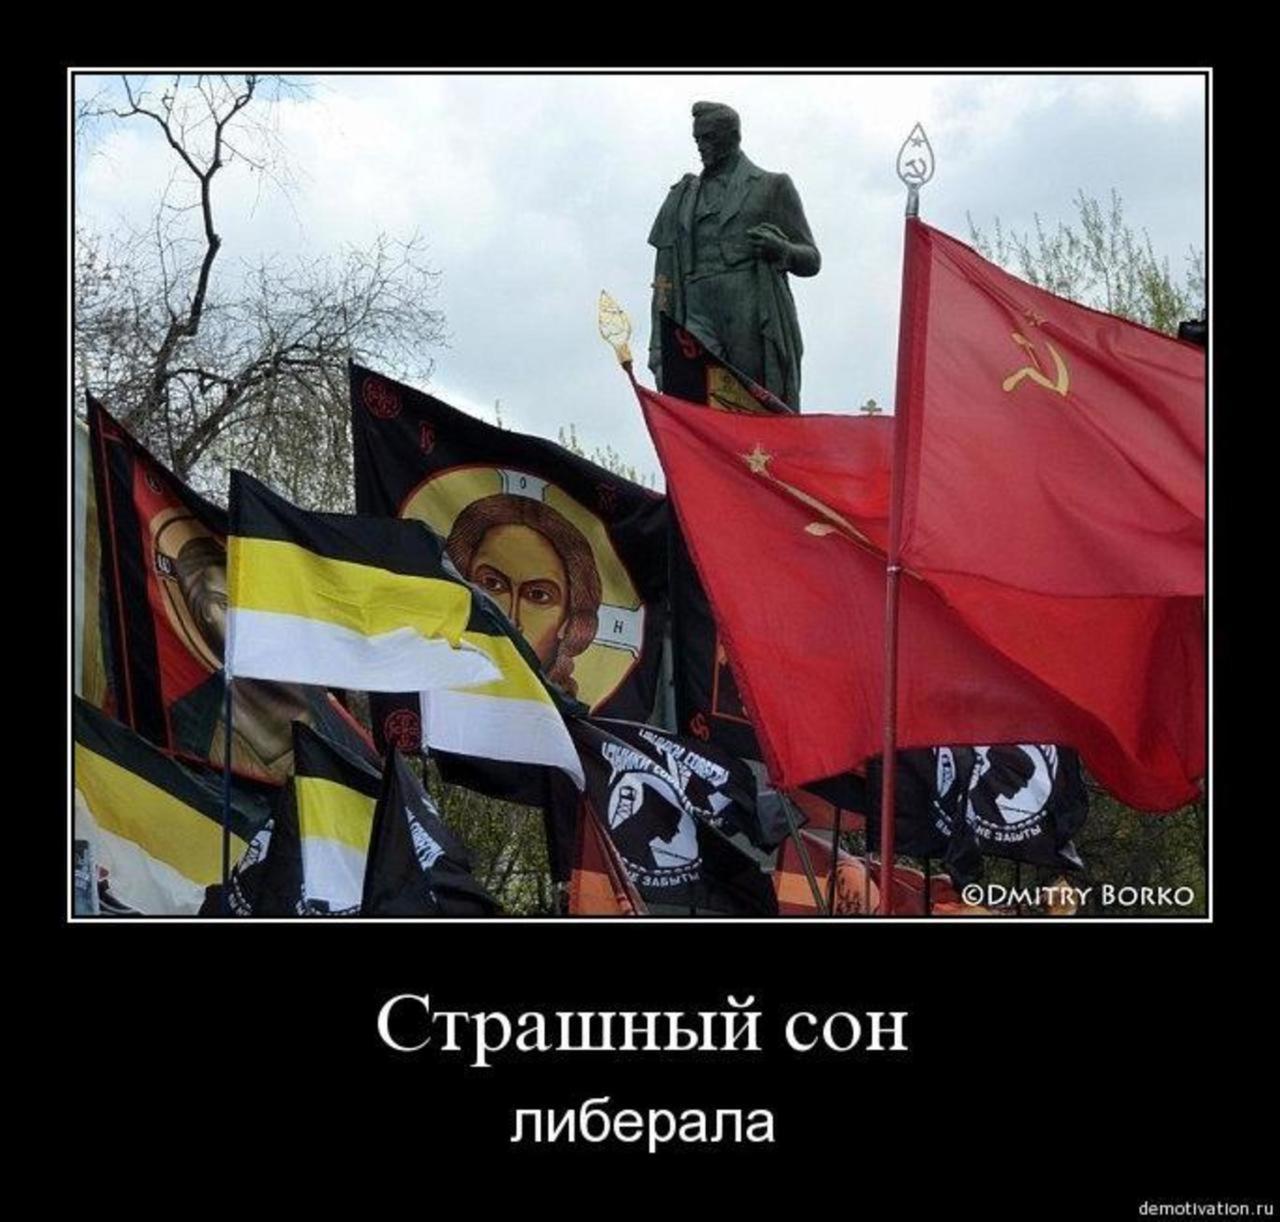 Альтернативная свободная. Националисты и коммунисты. Русские коммунисты националисты. Христианский национализм. Российские националисты против коммунистов.